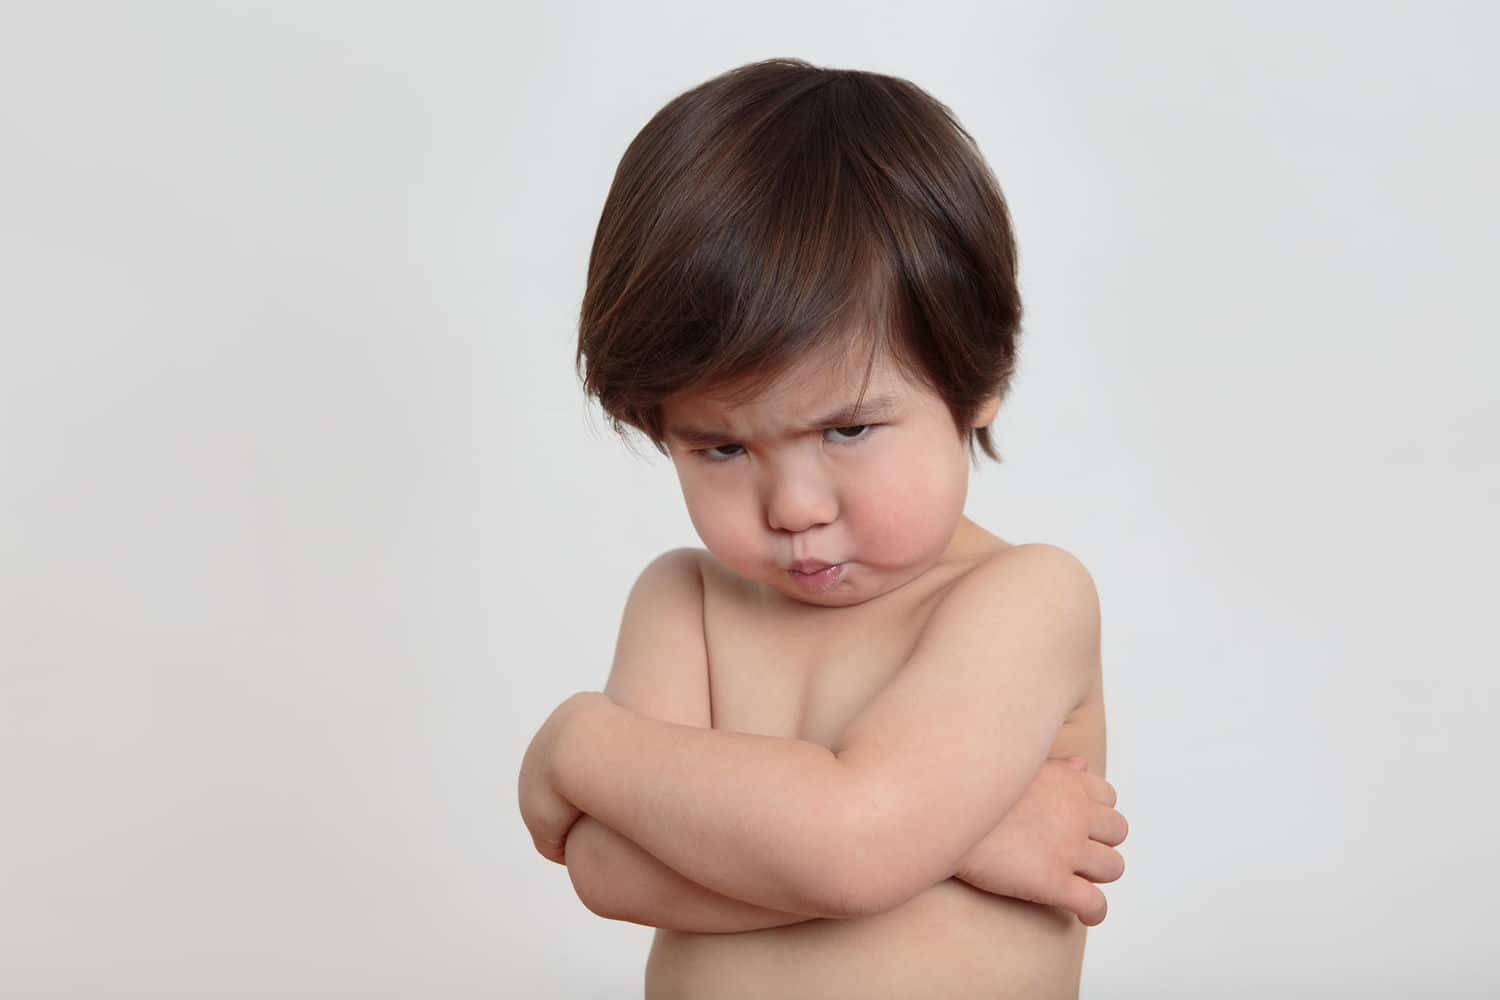 Adakah Anak Anda Marah Dengan Mudah? Berikut adalah 6 Petua untuk Mengatasinya